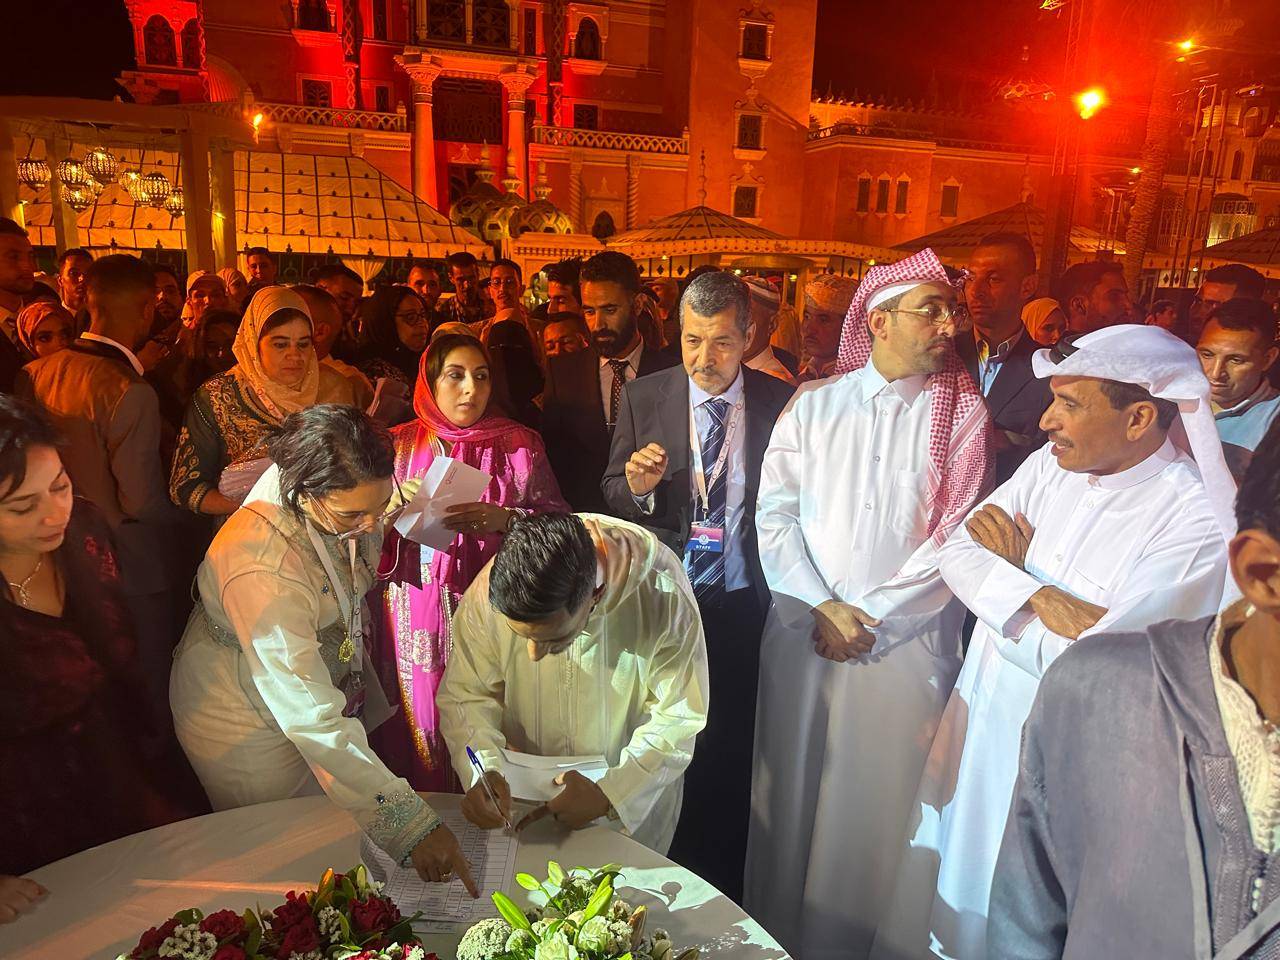 مؤسسة قطرية تقيم بمراكش حفل زفاف أسطوري لأزواج من ضحايا الزلزال وتوزع عليهم 100 مليون